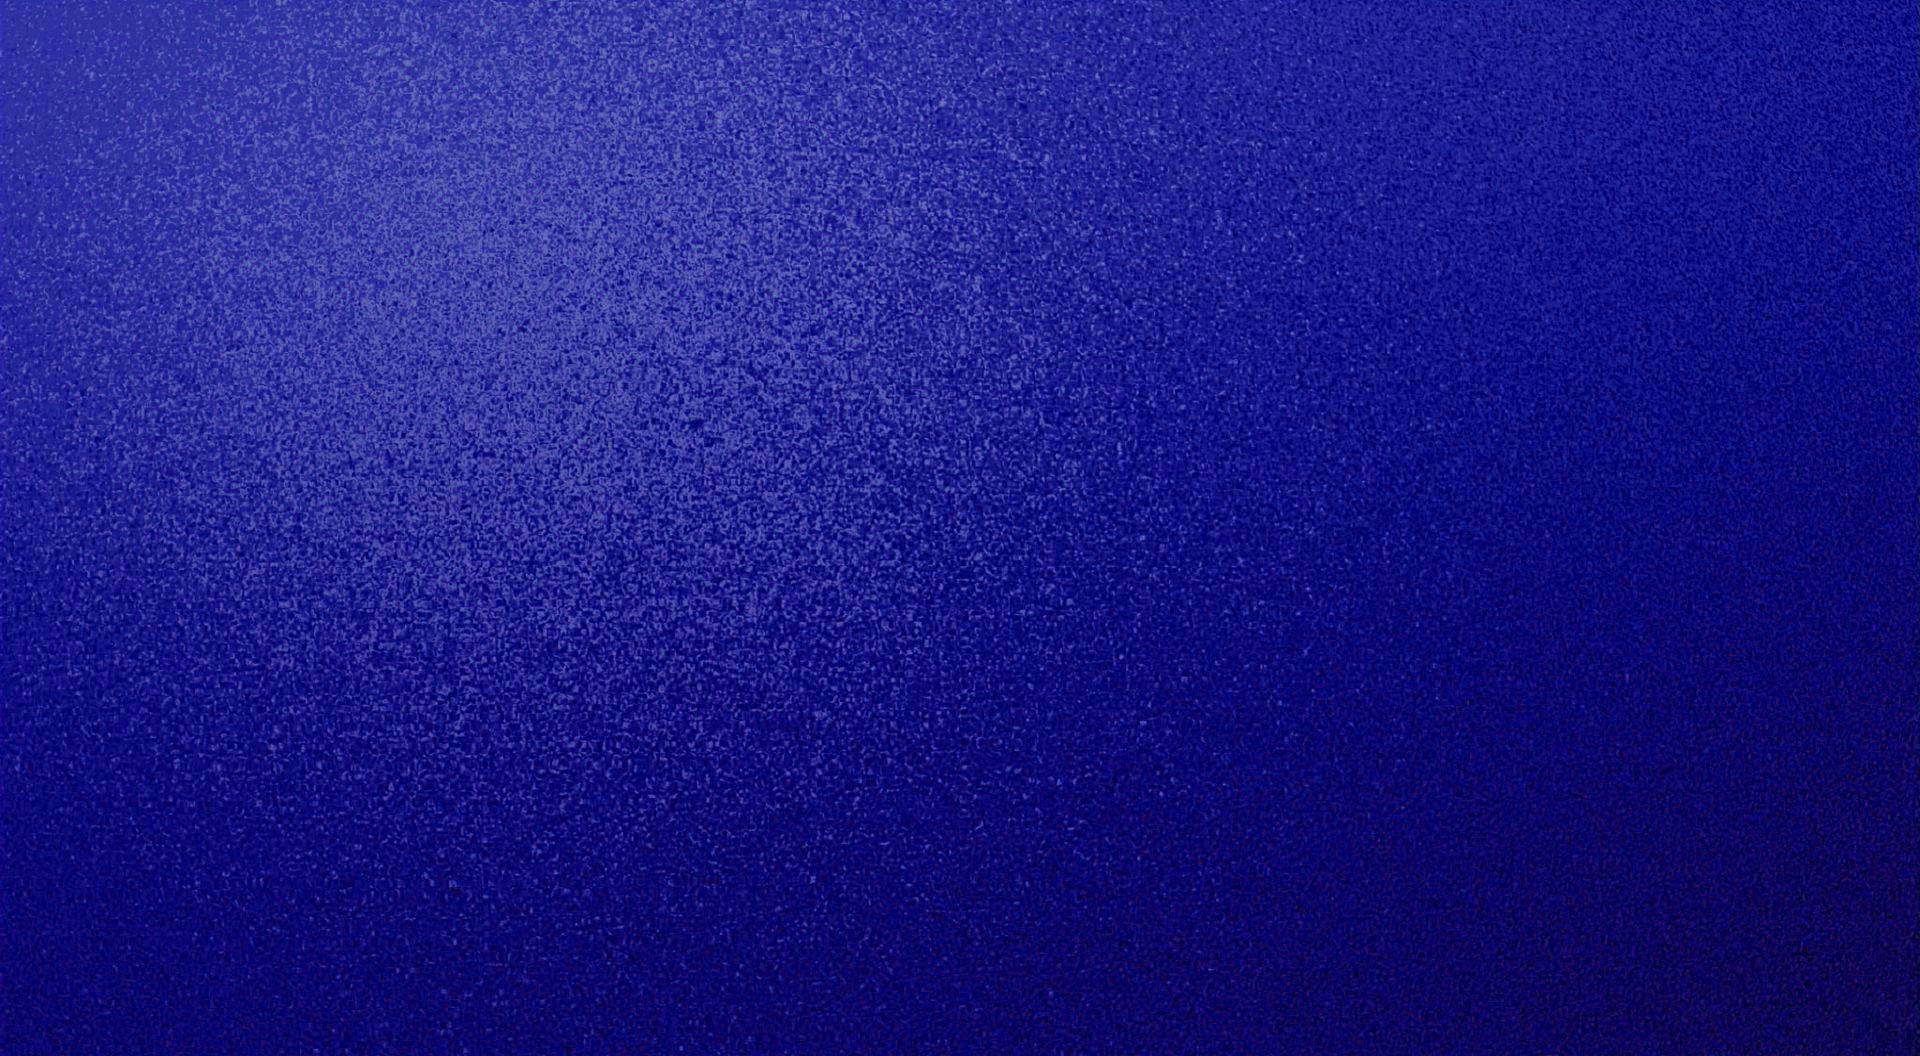 Dark Blue Royal Textured Speckled Desktop Background Wallpaper